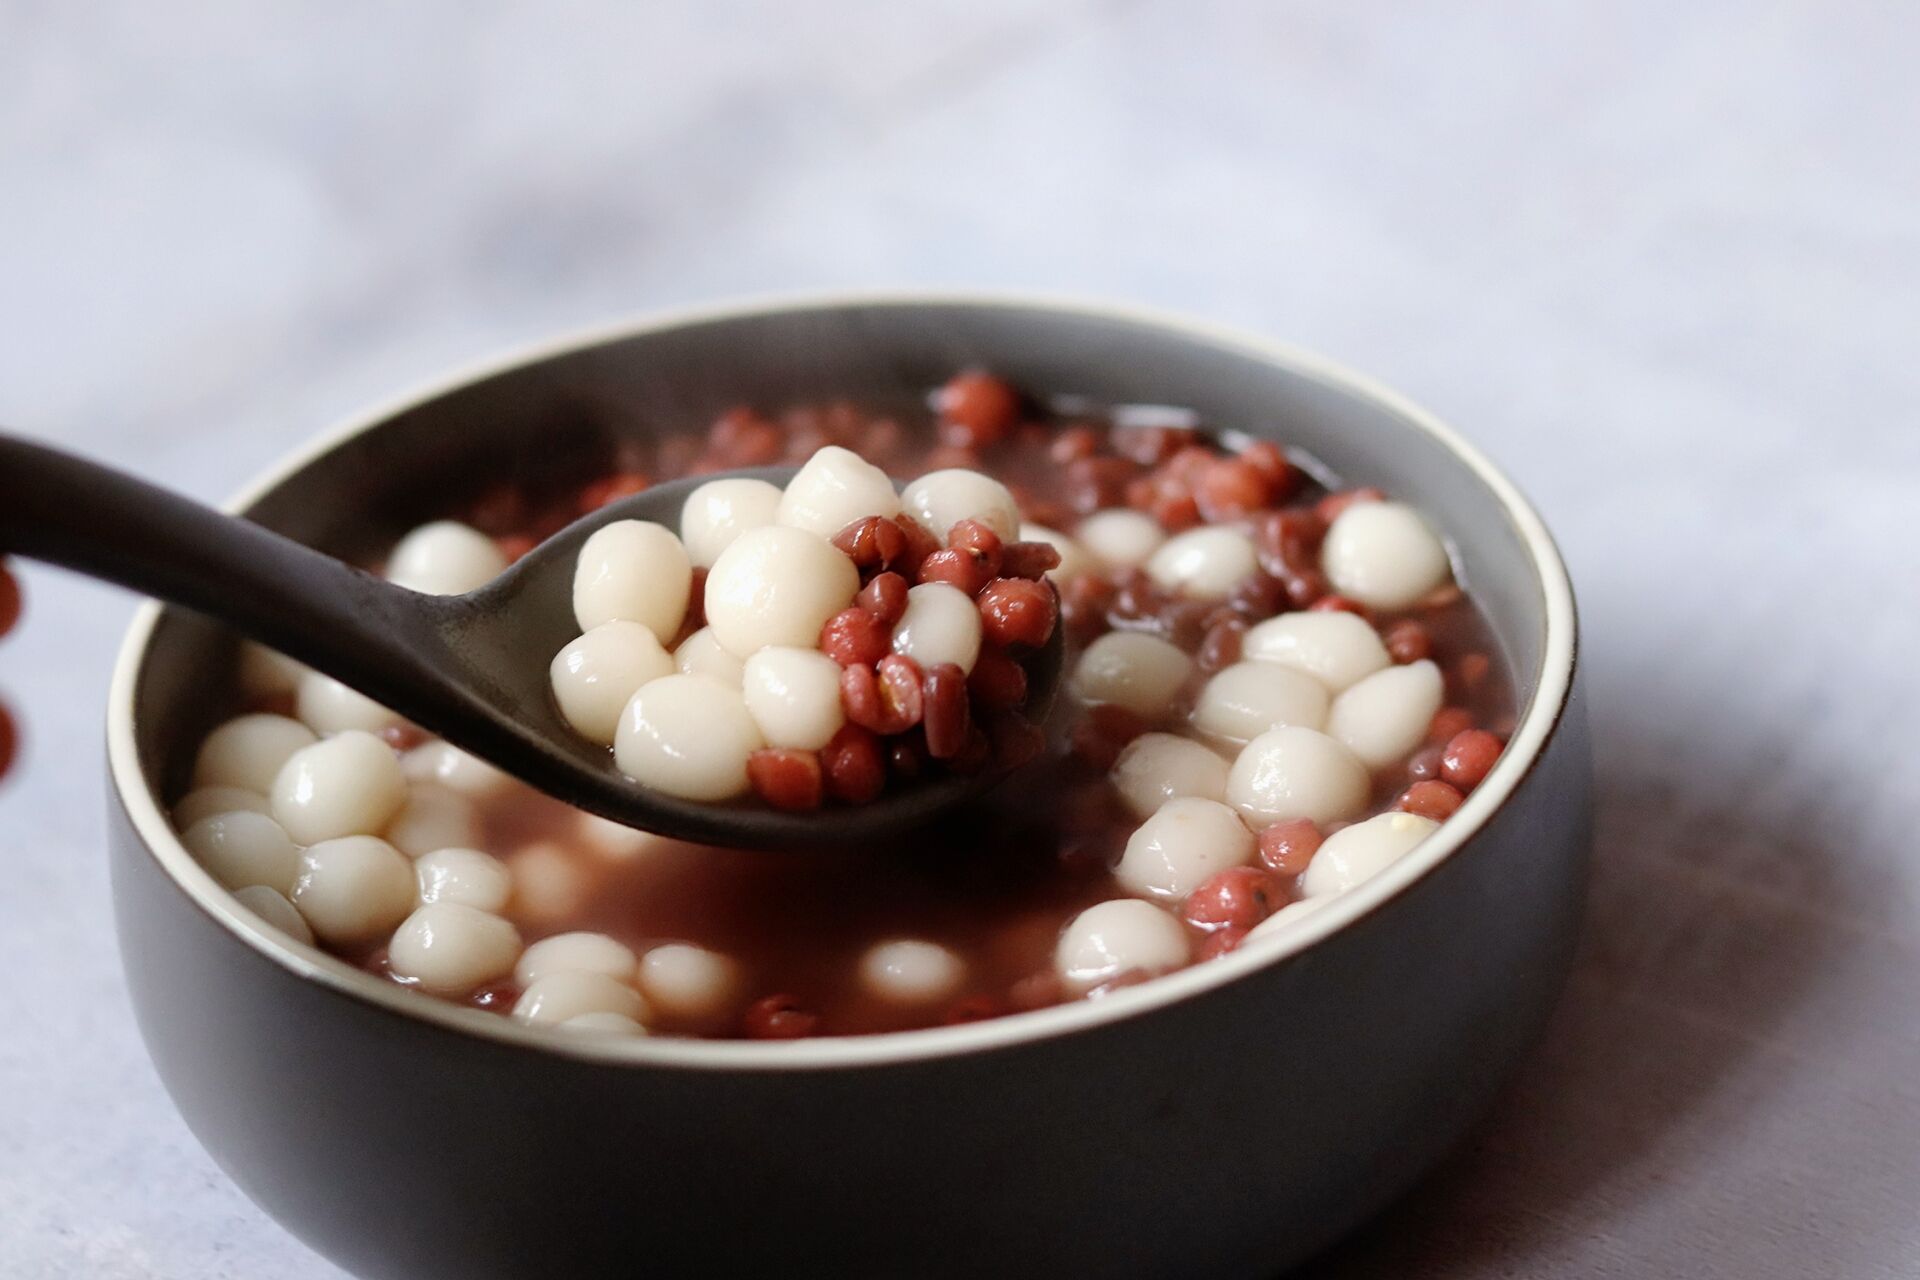 冬至了,来一碗红豆薏米小圆子吧,让你的心都是暖暖的